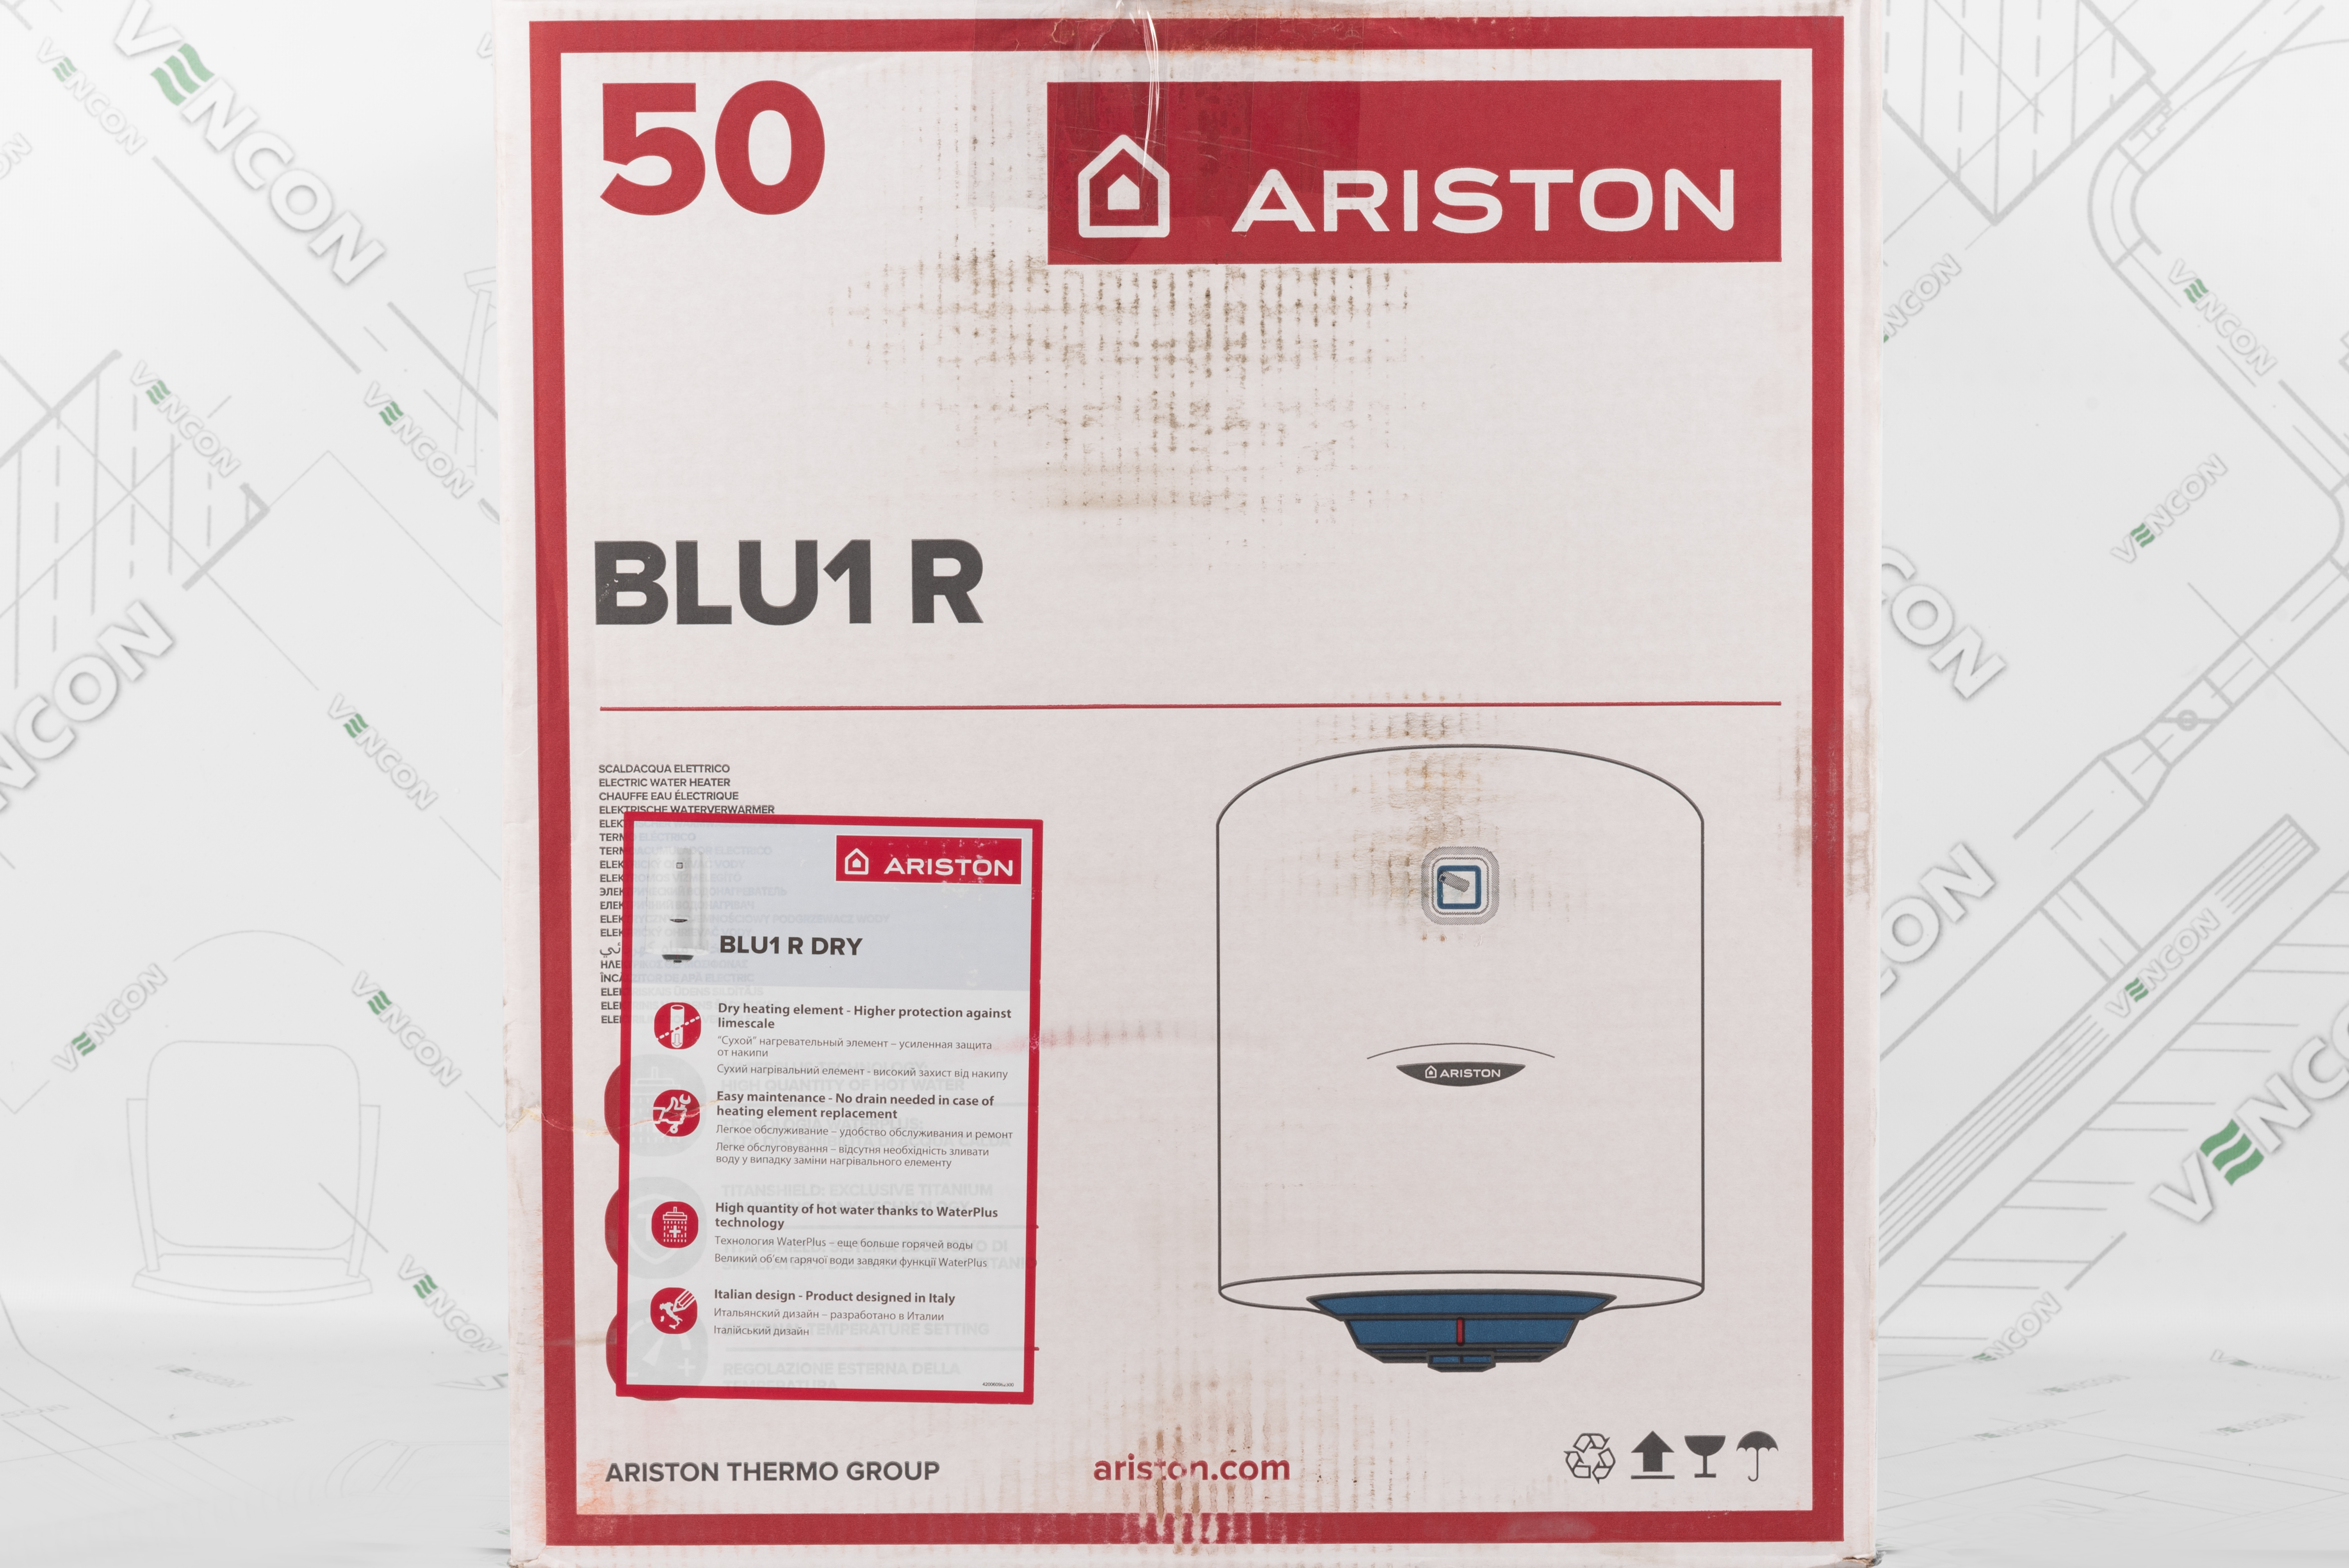 Ariston BLU1 R 50 V 1.5 К PL DRY в магазині - фото 17